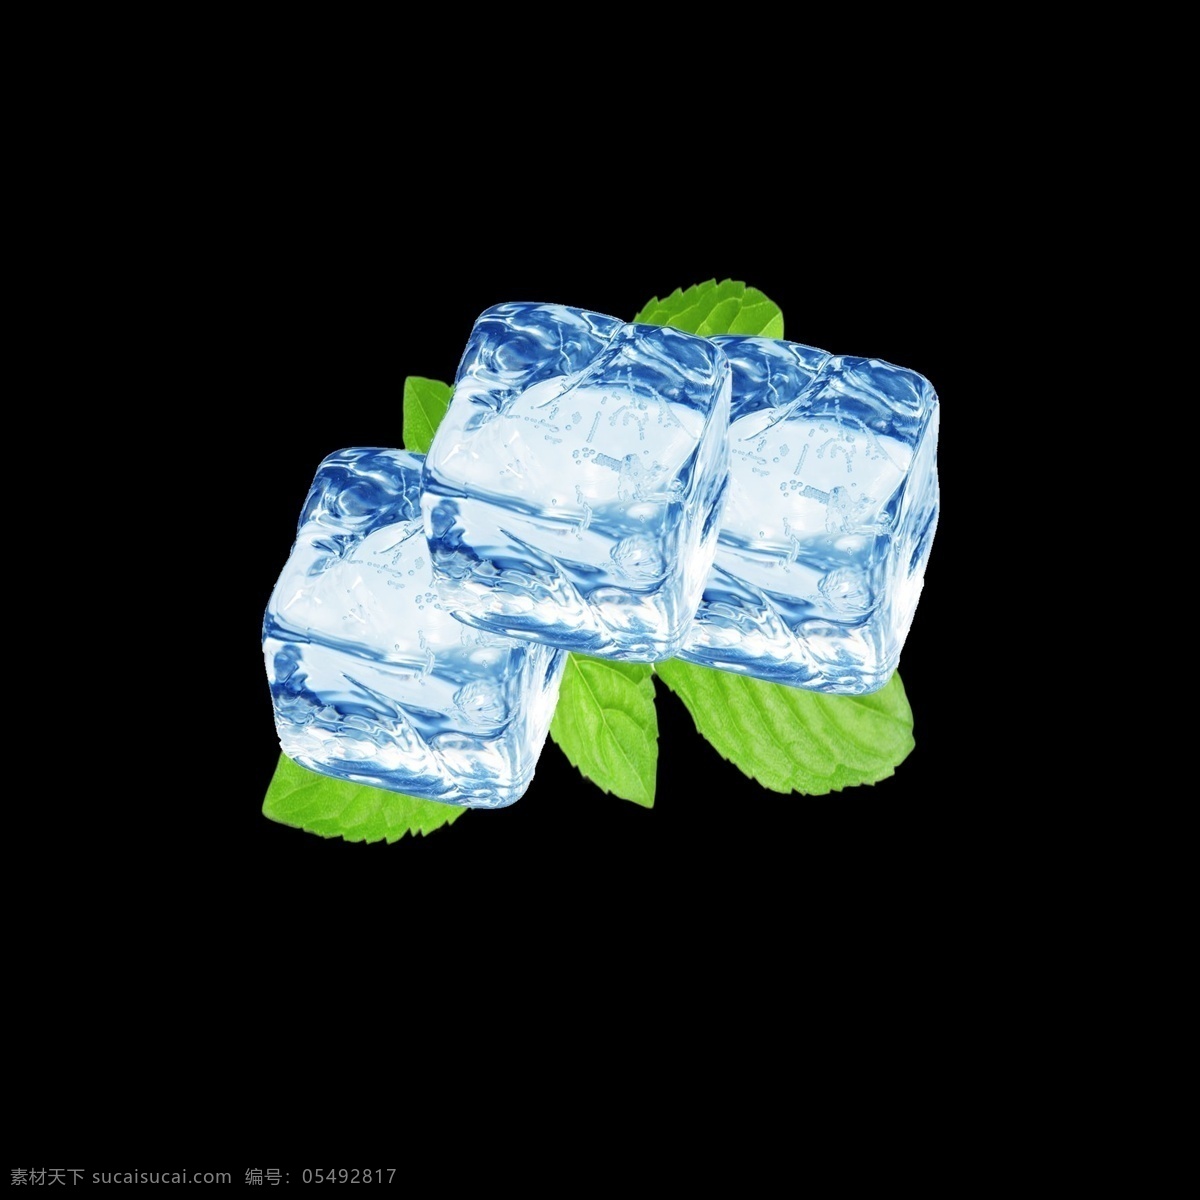 唯美 冰块 水果 元素 冰 不规则图形 几何冰晶 白色冰块 几何冰晶冰块